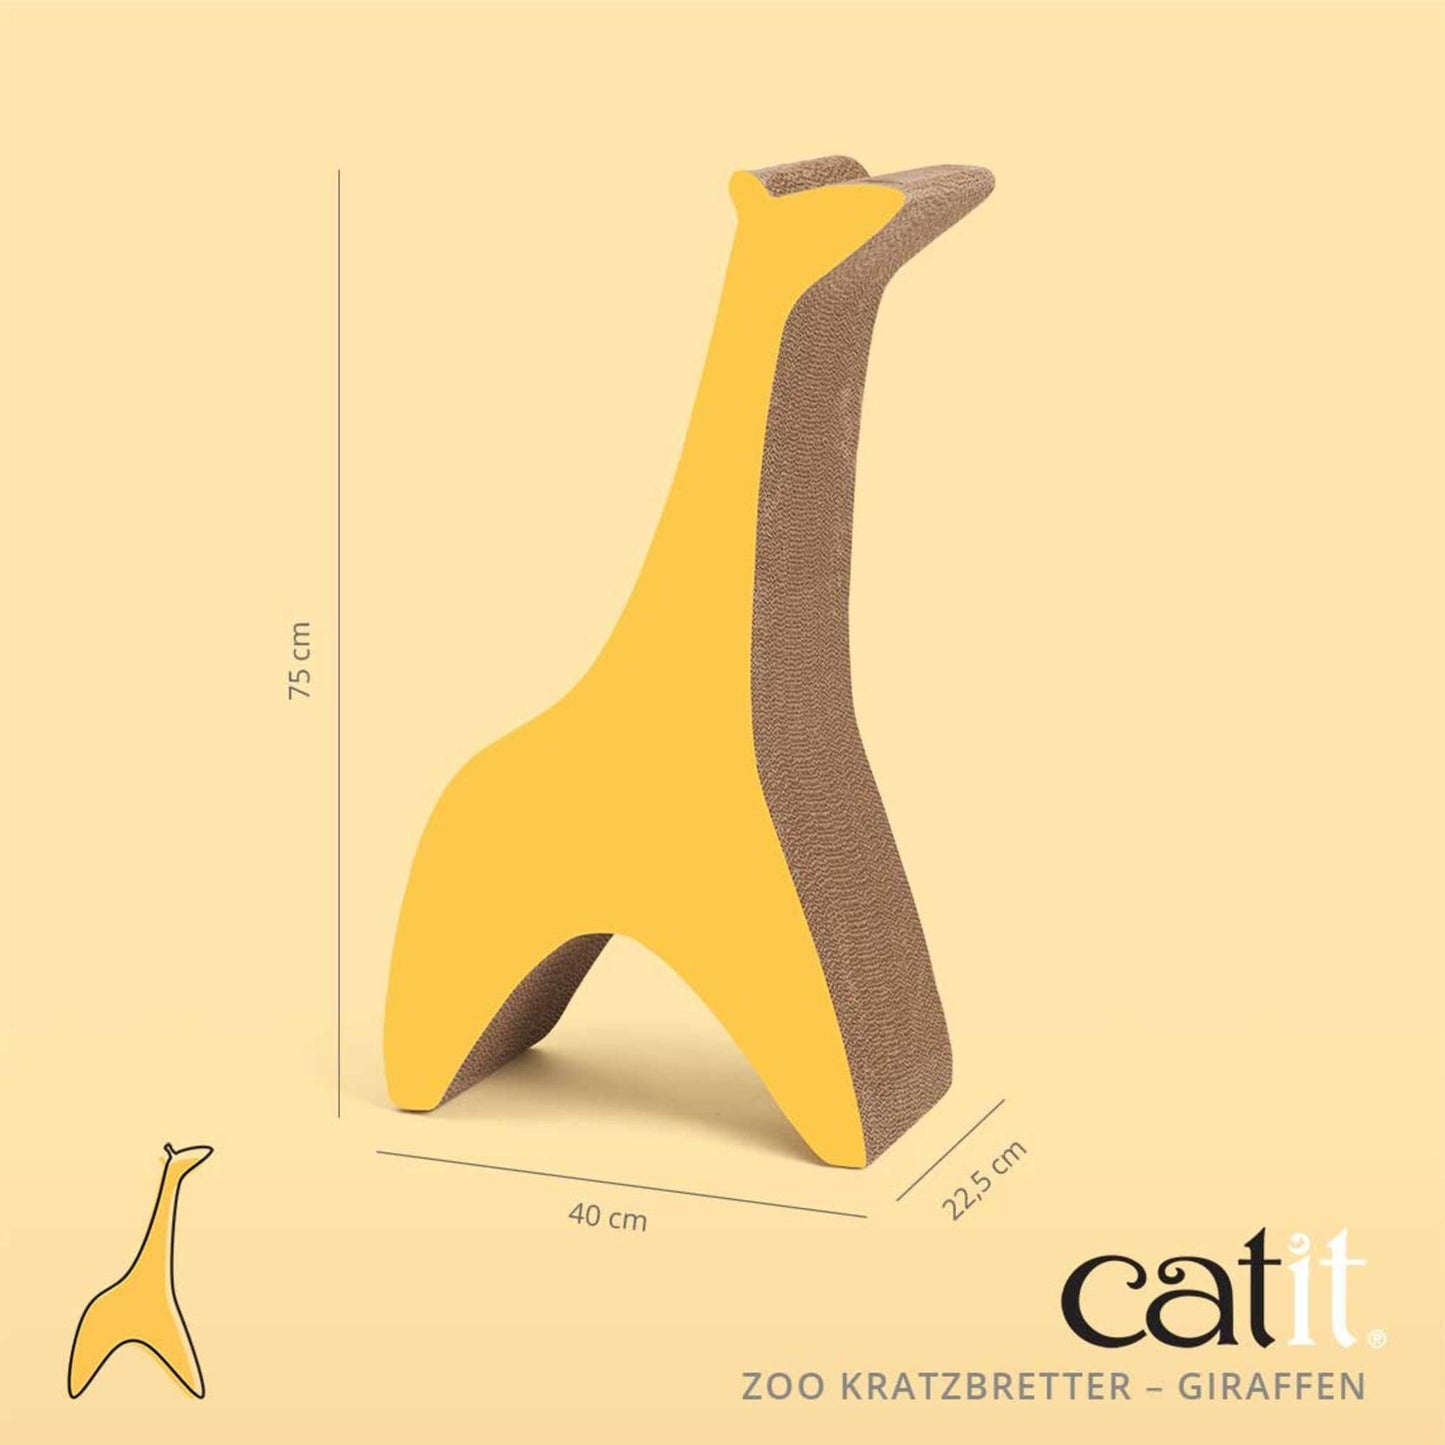 Catit Zoo Kratzbretter ─ Große Giraffe